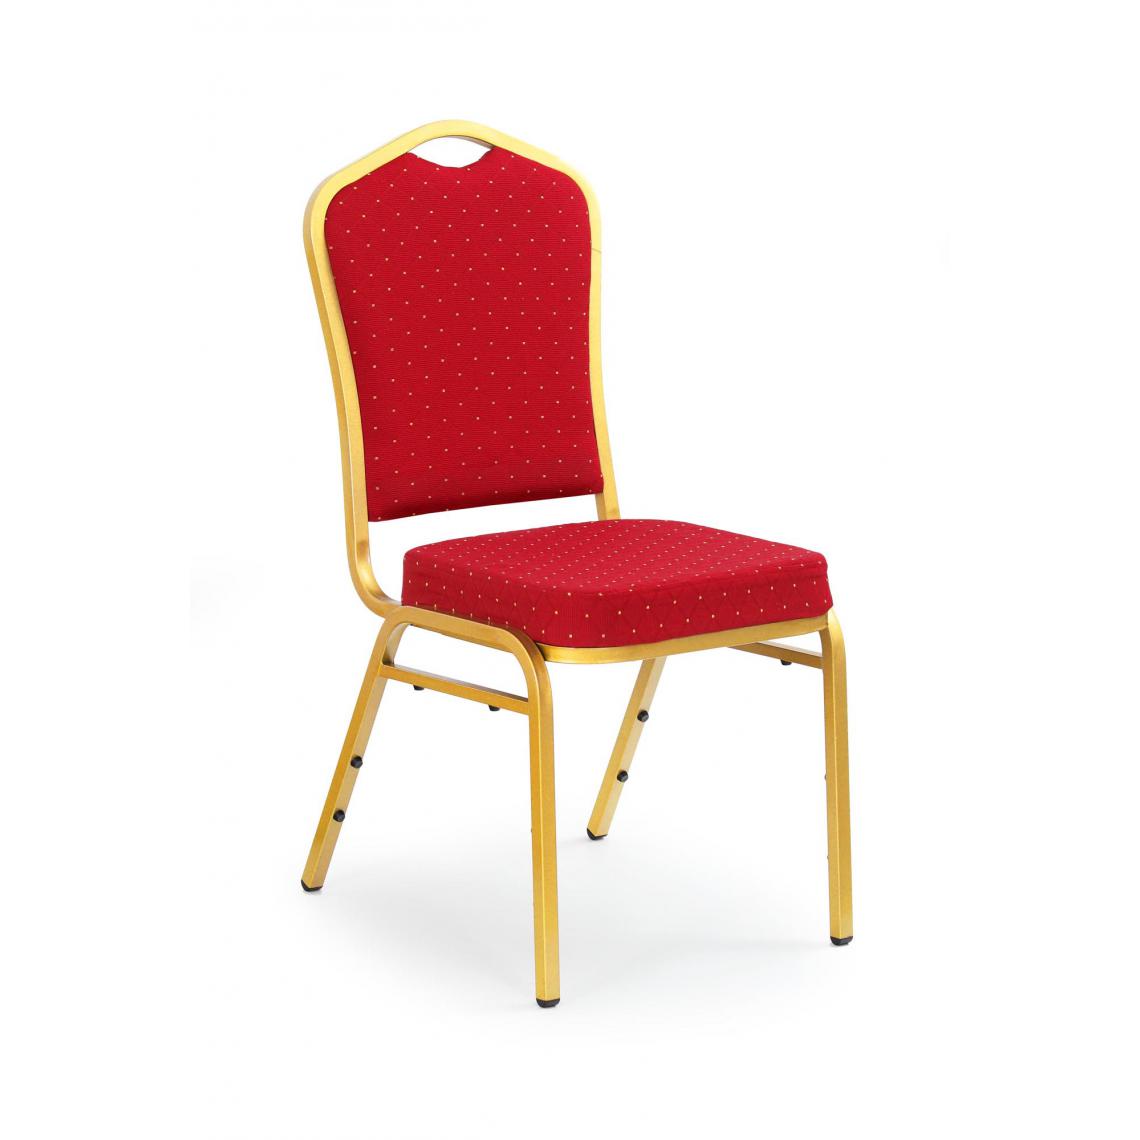 Hucoco - SEVERINO - Chaise rembourrée style classique salon/chambre - 93x59x45 - Cadre en acier - Meuble de salle à manger - Rouge - Chaises